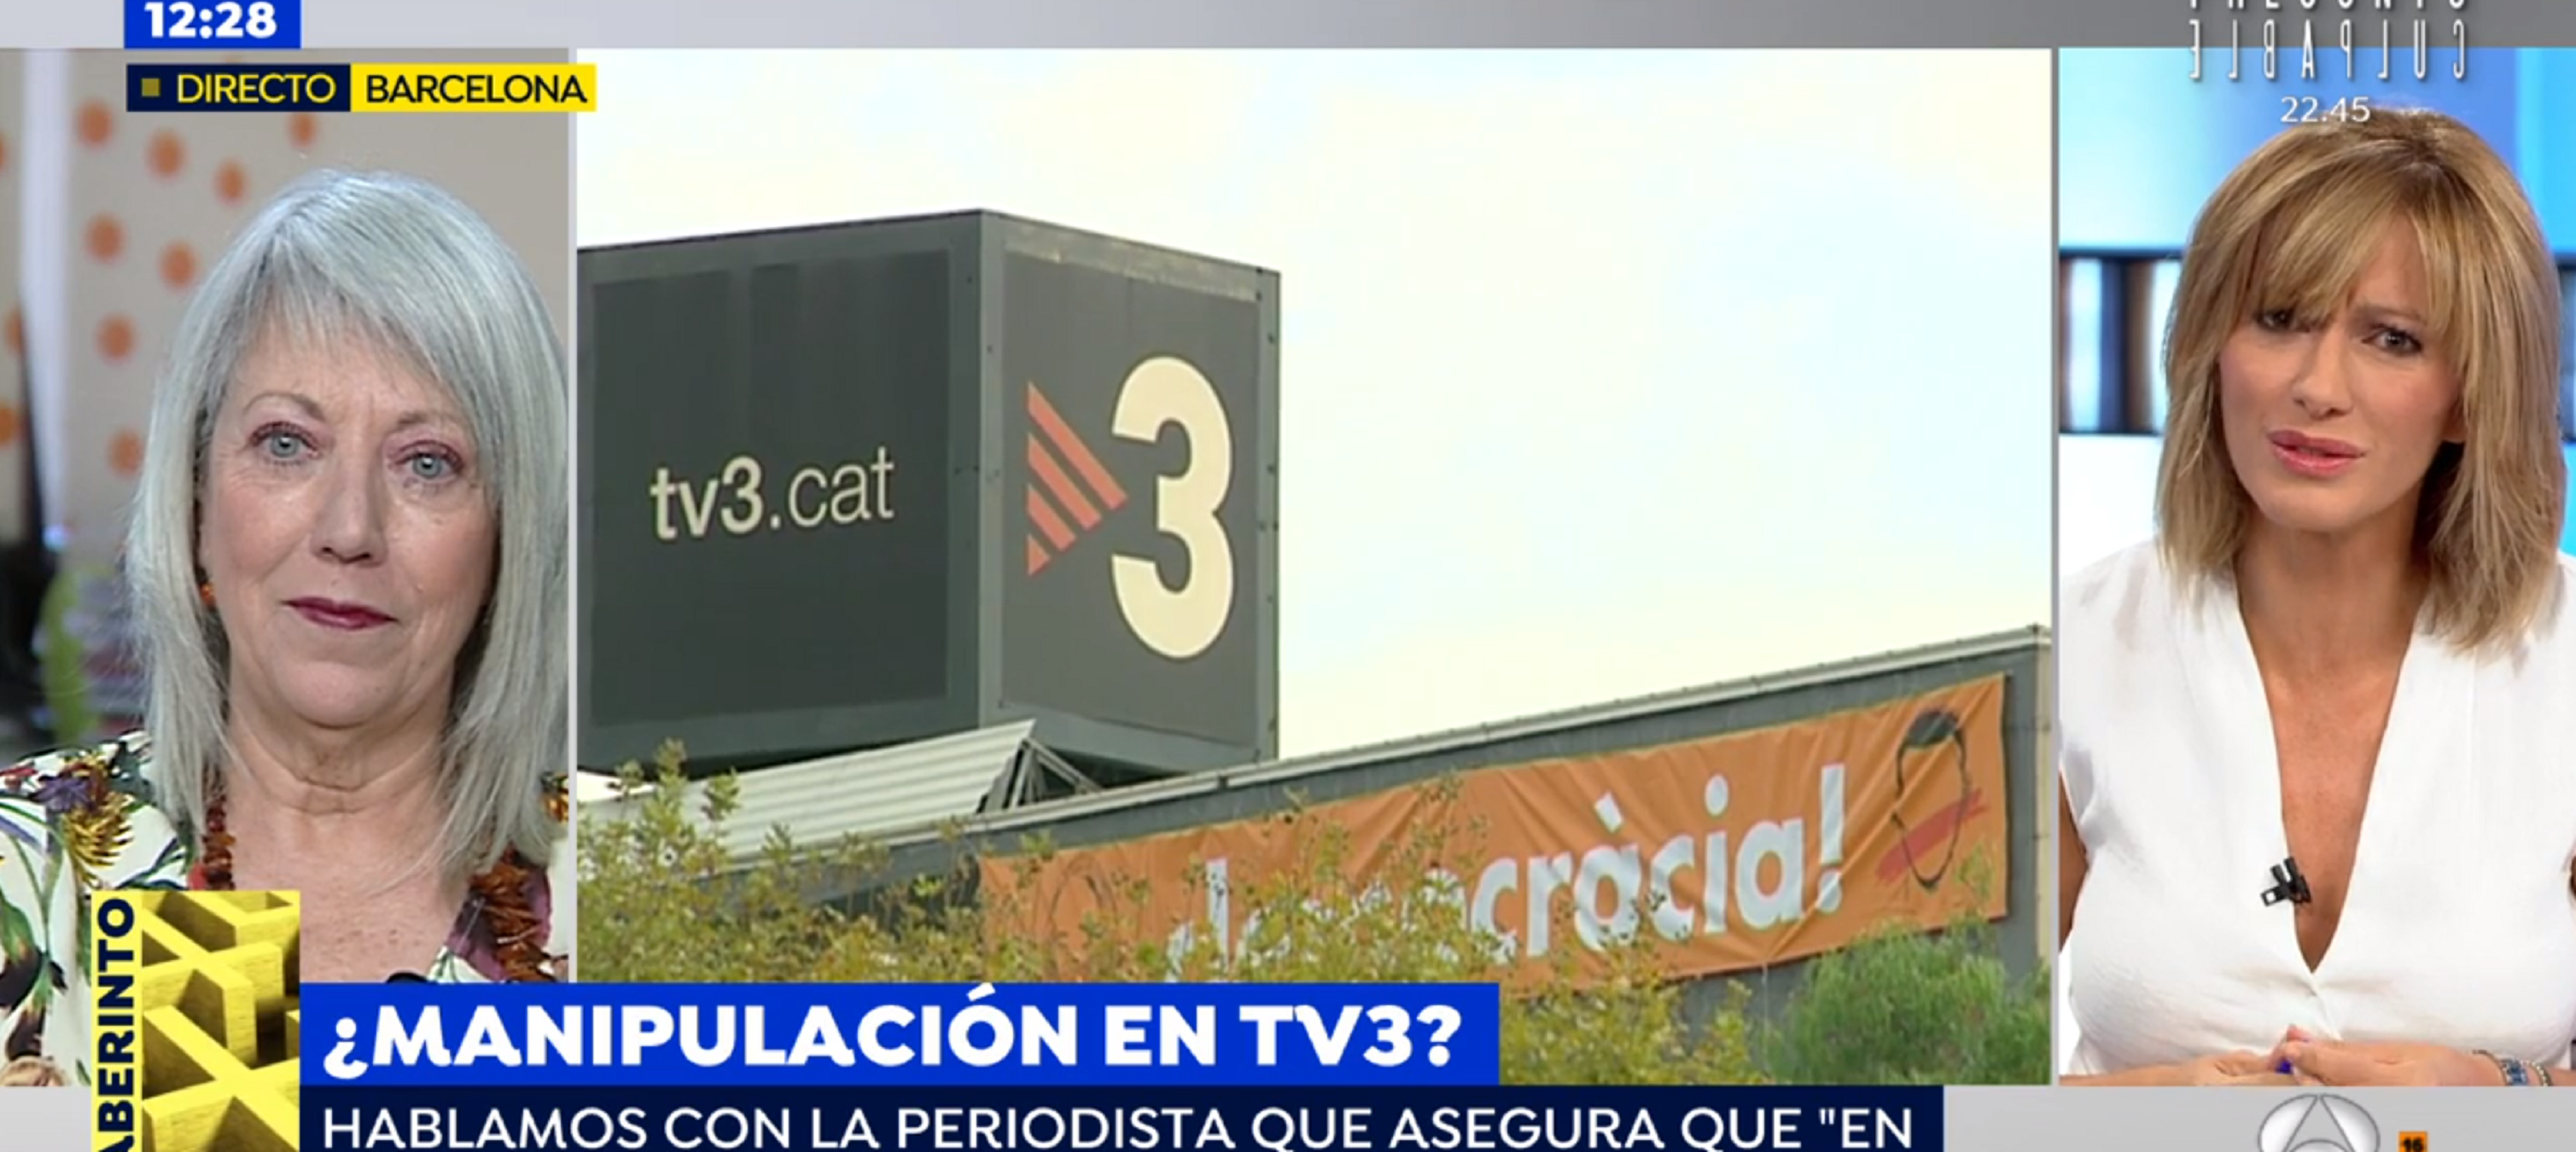 Griso hurga en una exredactora de TV3 que testifica: "TV3 manipula y miente"